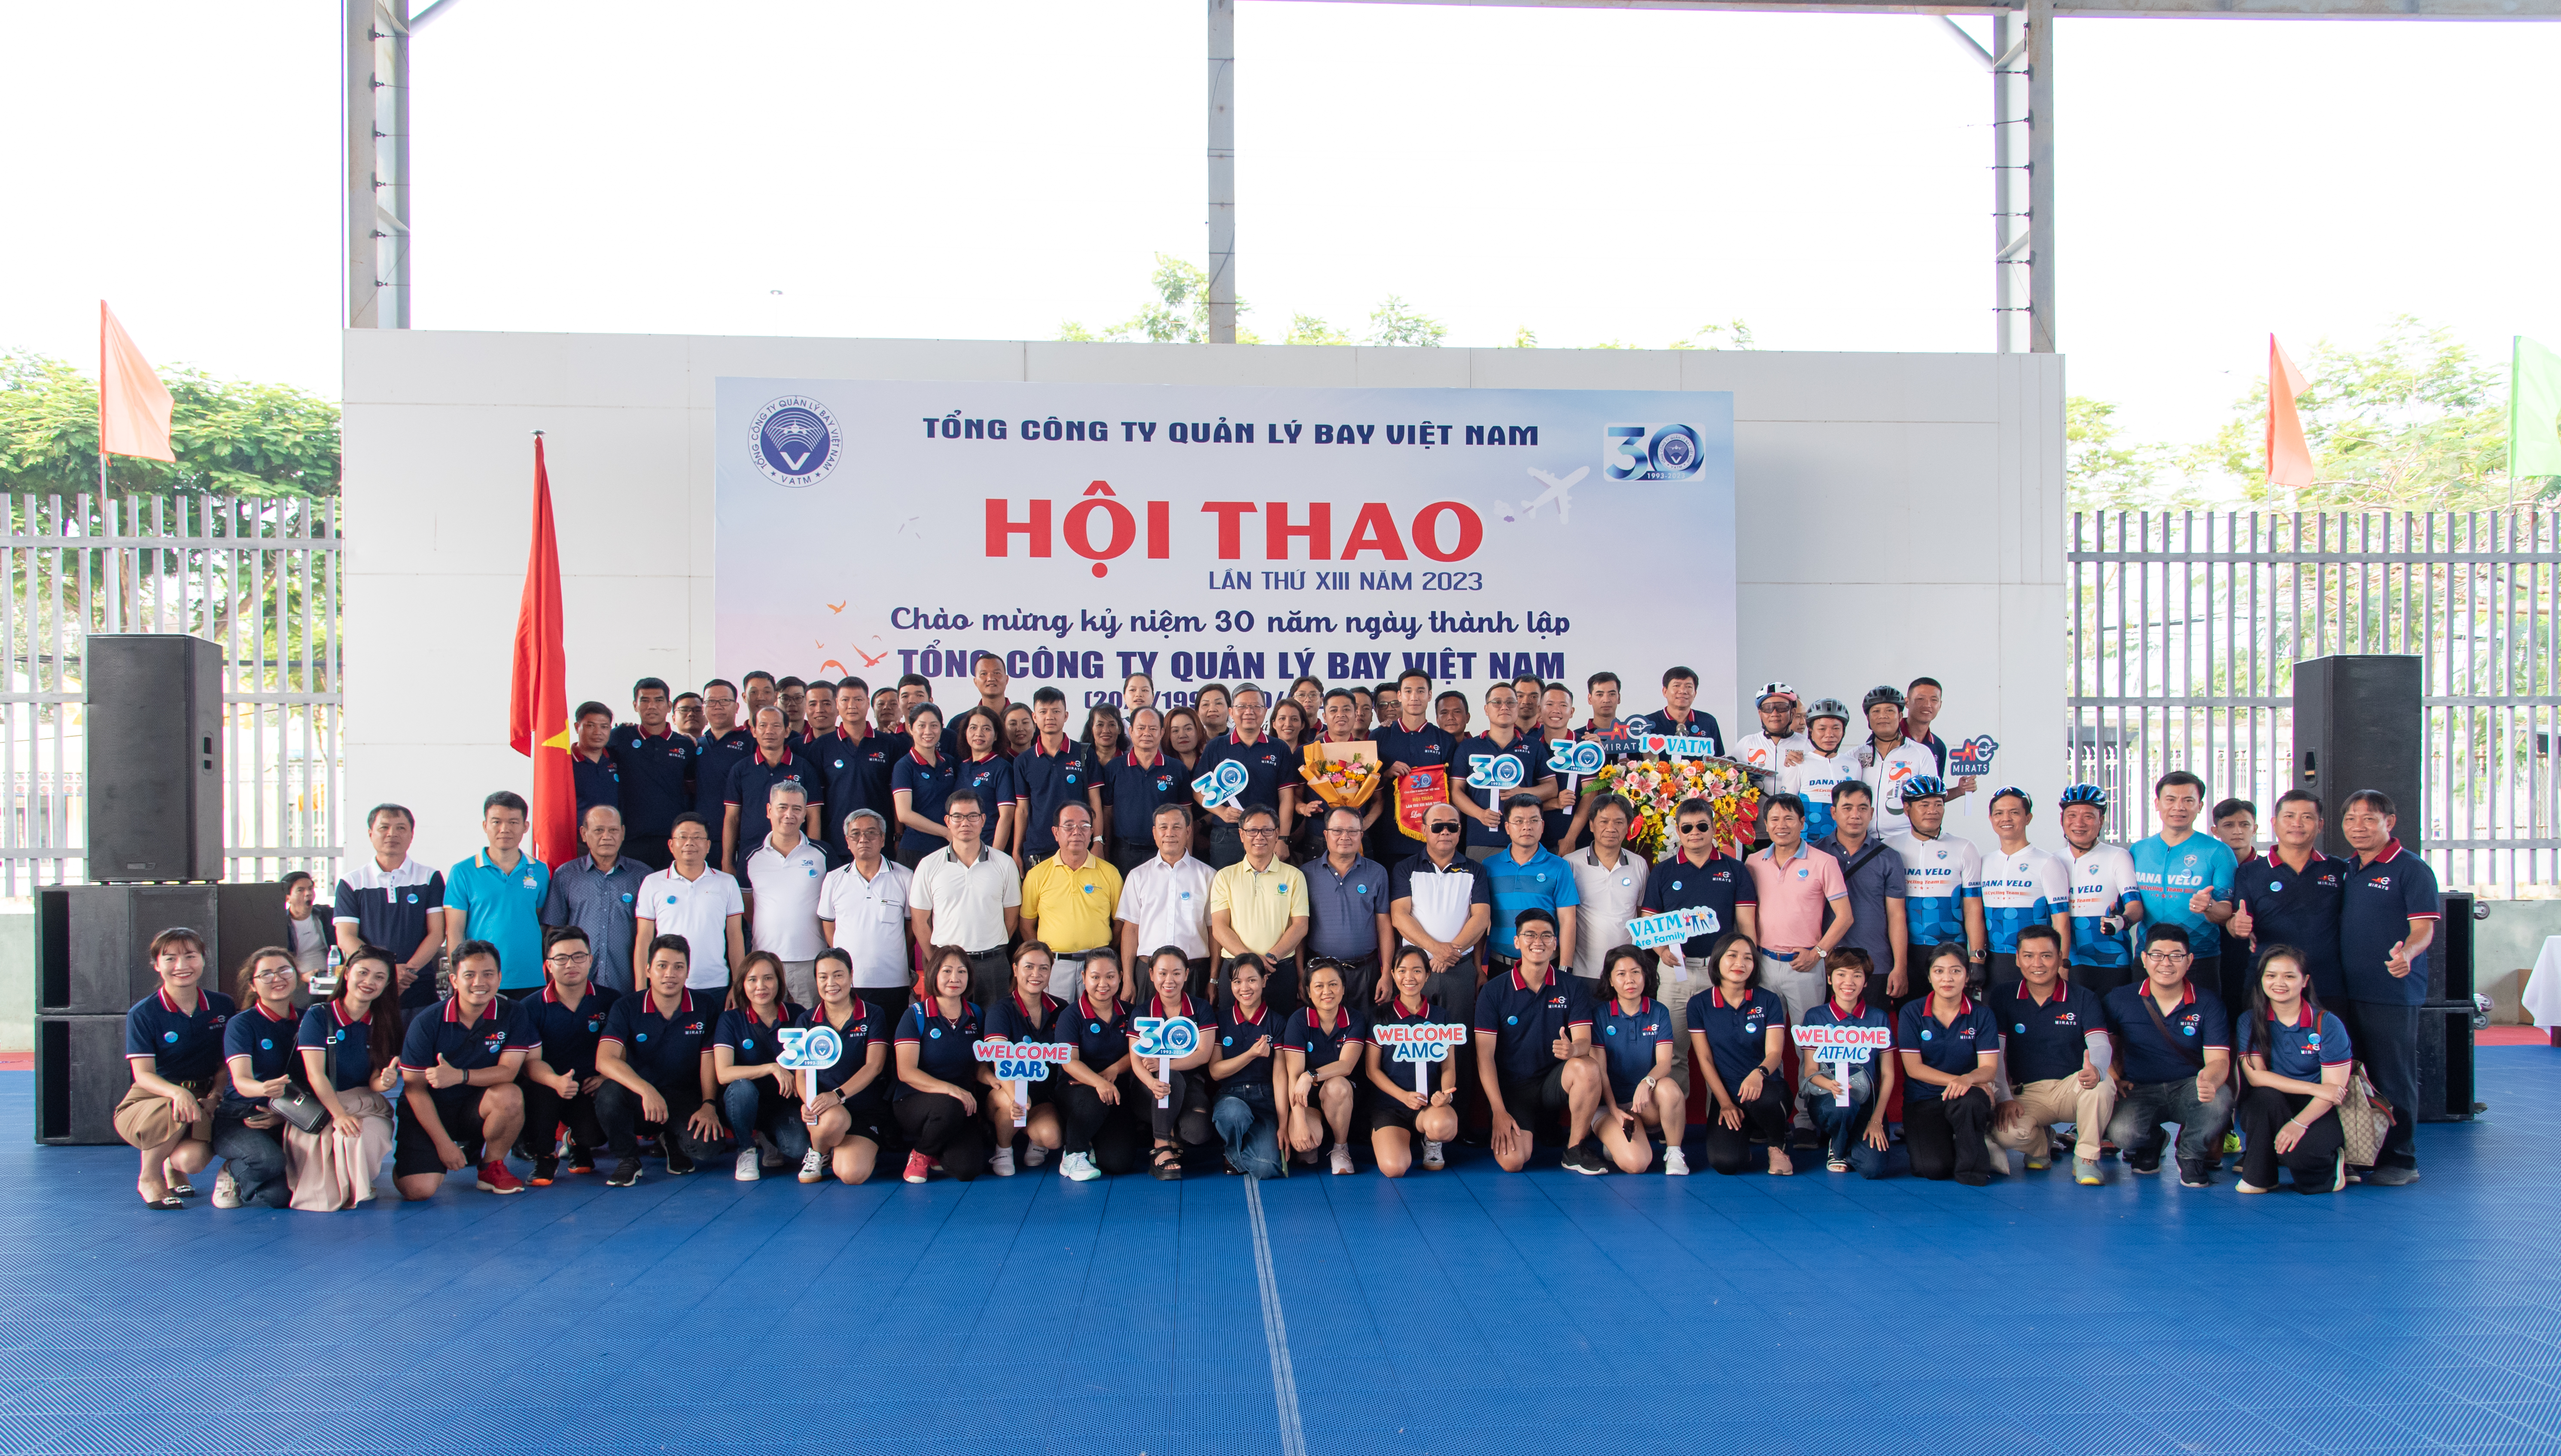 Khai mạc Hội thao Tổng công ty Quản lý bay Việt Nam lần thứ XIII năm 2023